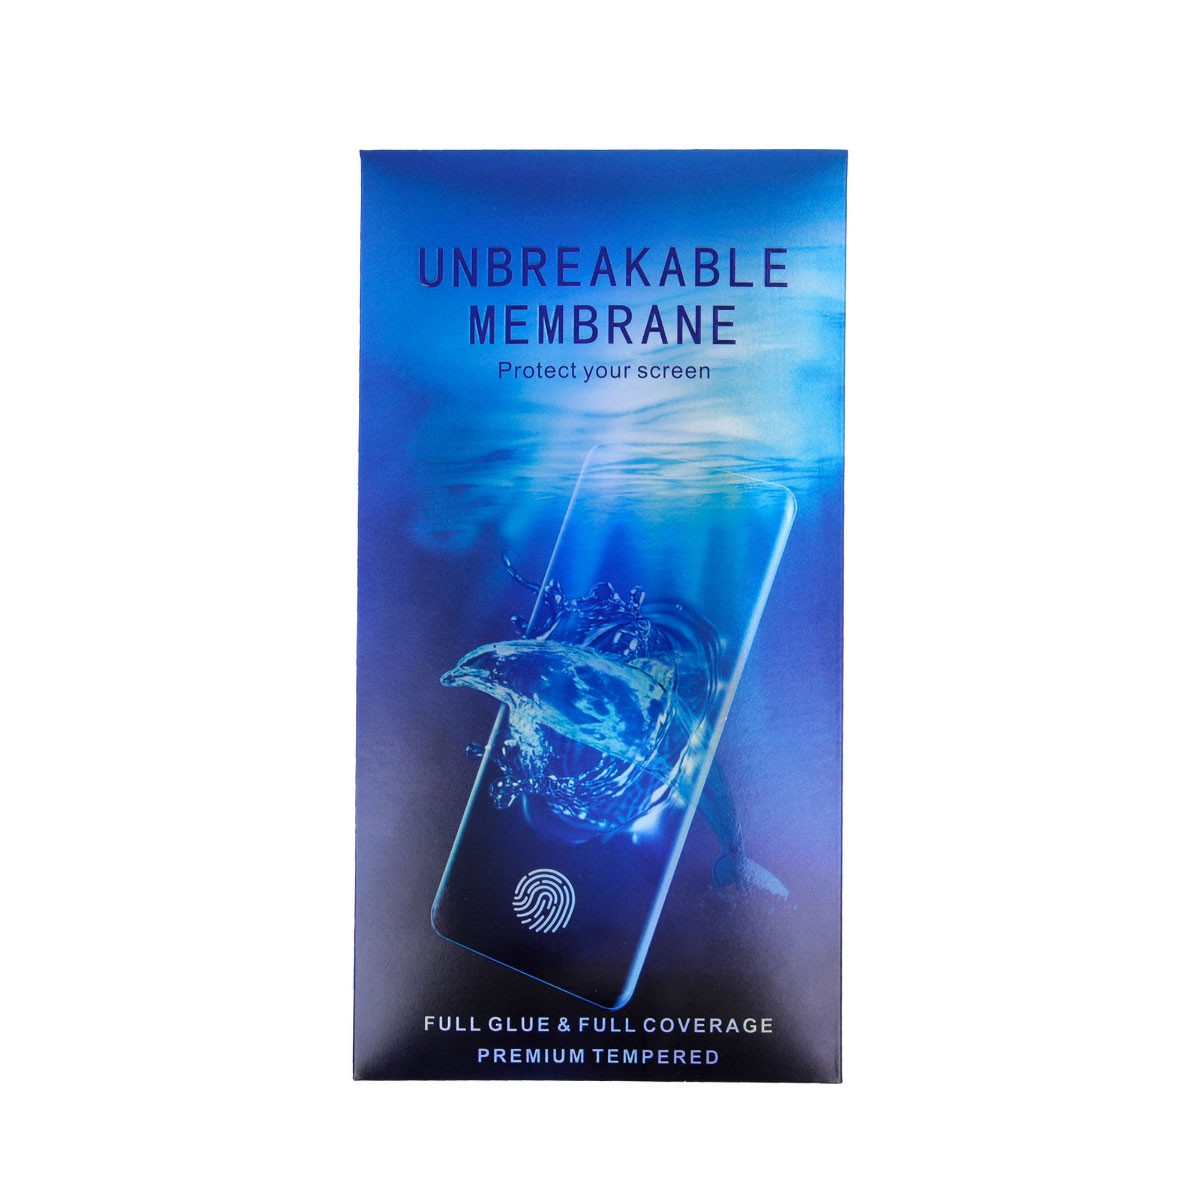 Protecteur d'écran en film hydrogel pour iPhone 6, iPhone 6S, iPhone 7, iPhone 8 photo 1